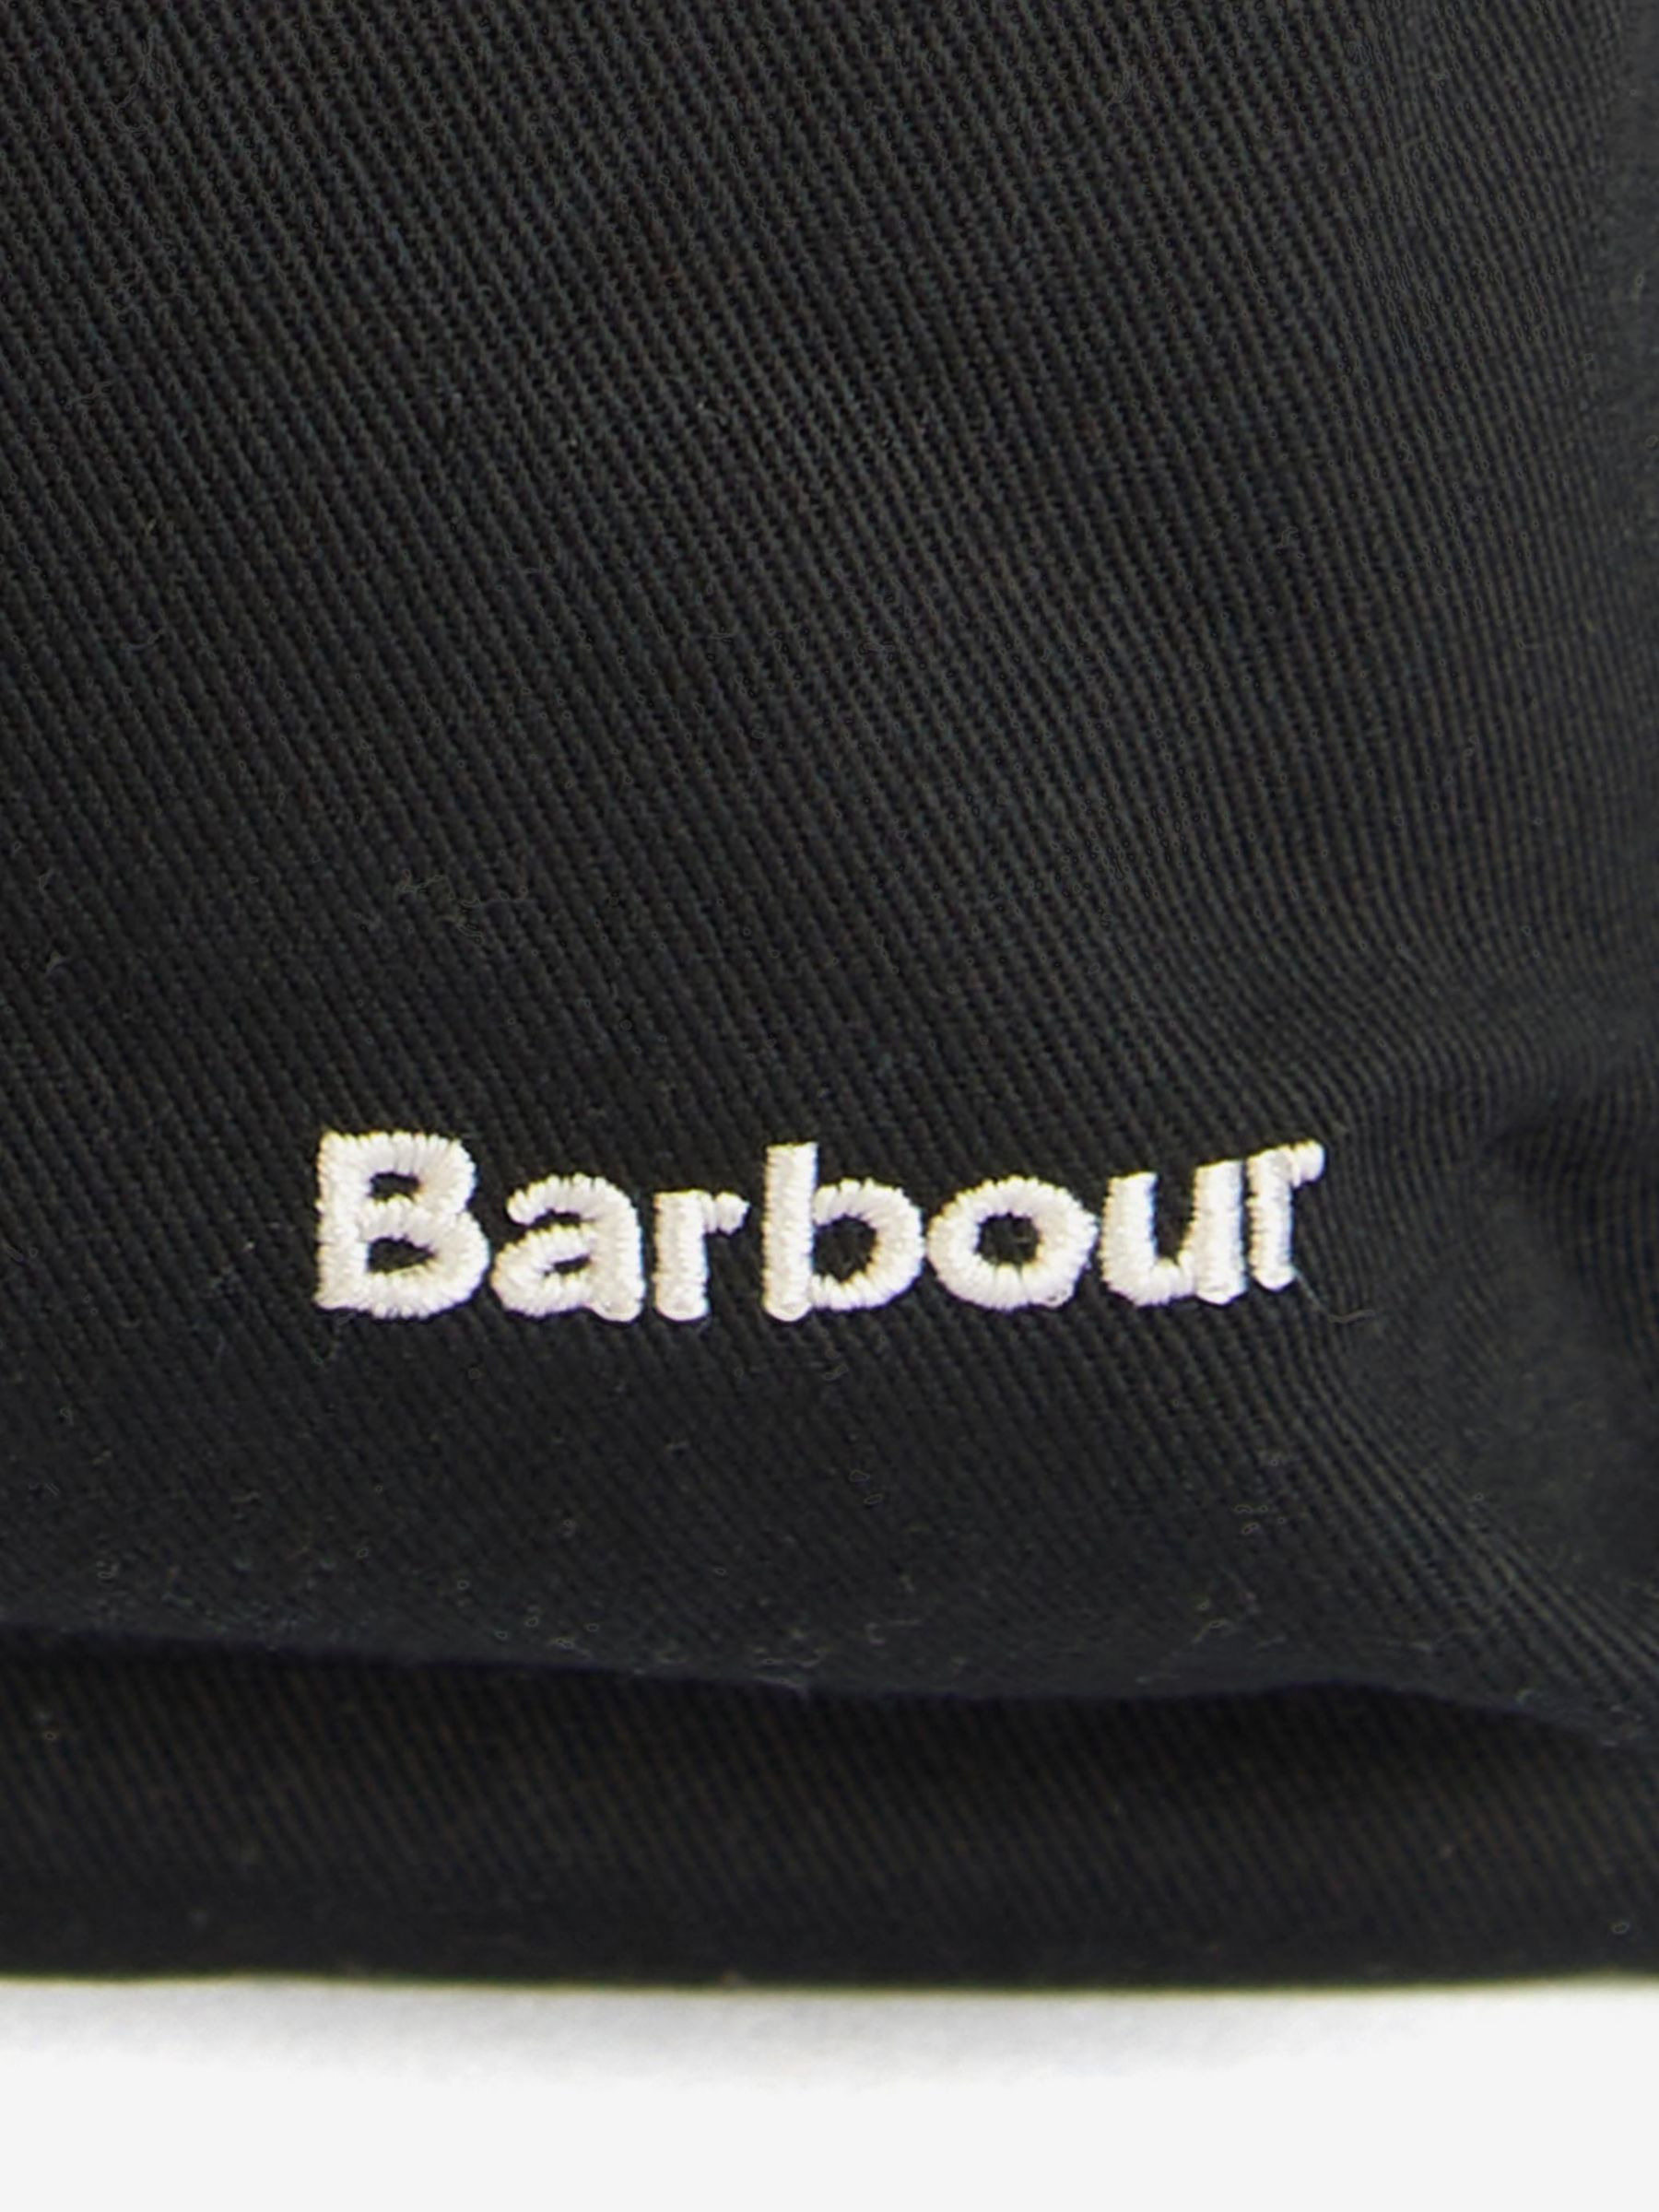 Buy Barbour Olivia Backpack Online at johnlewis.com